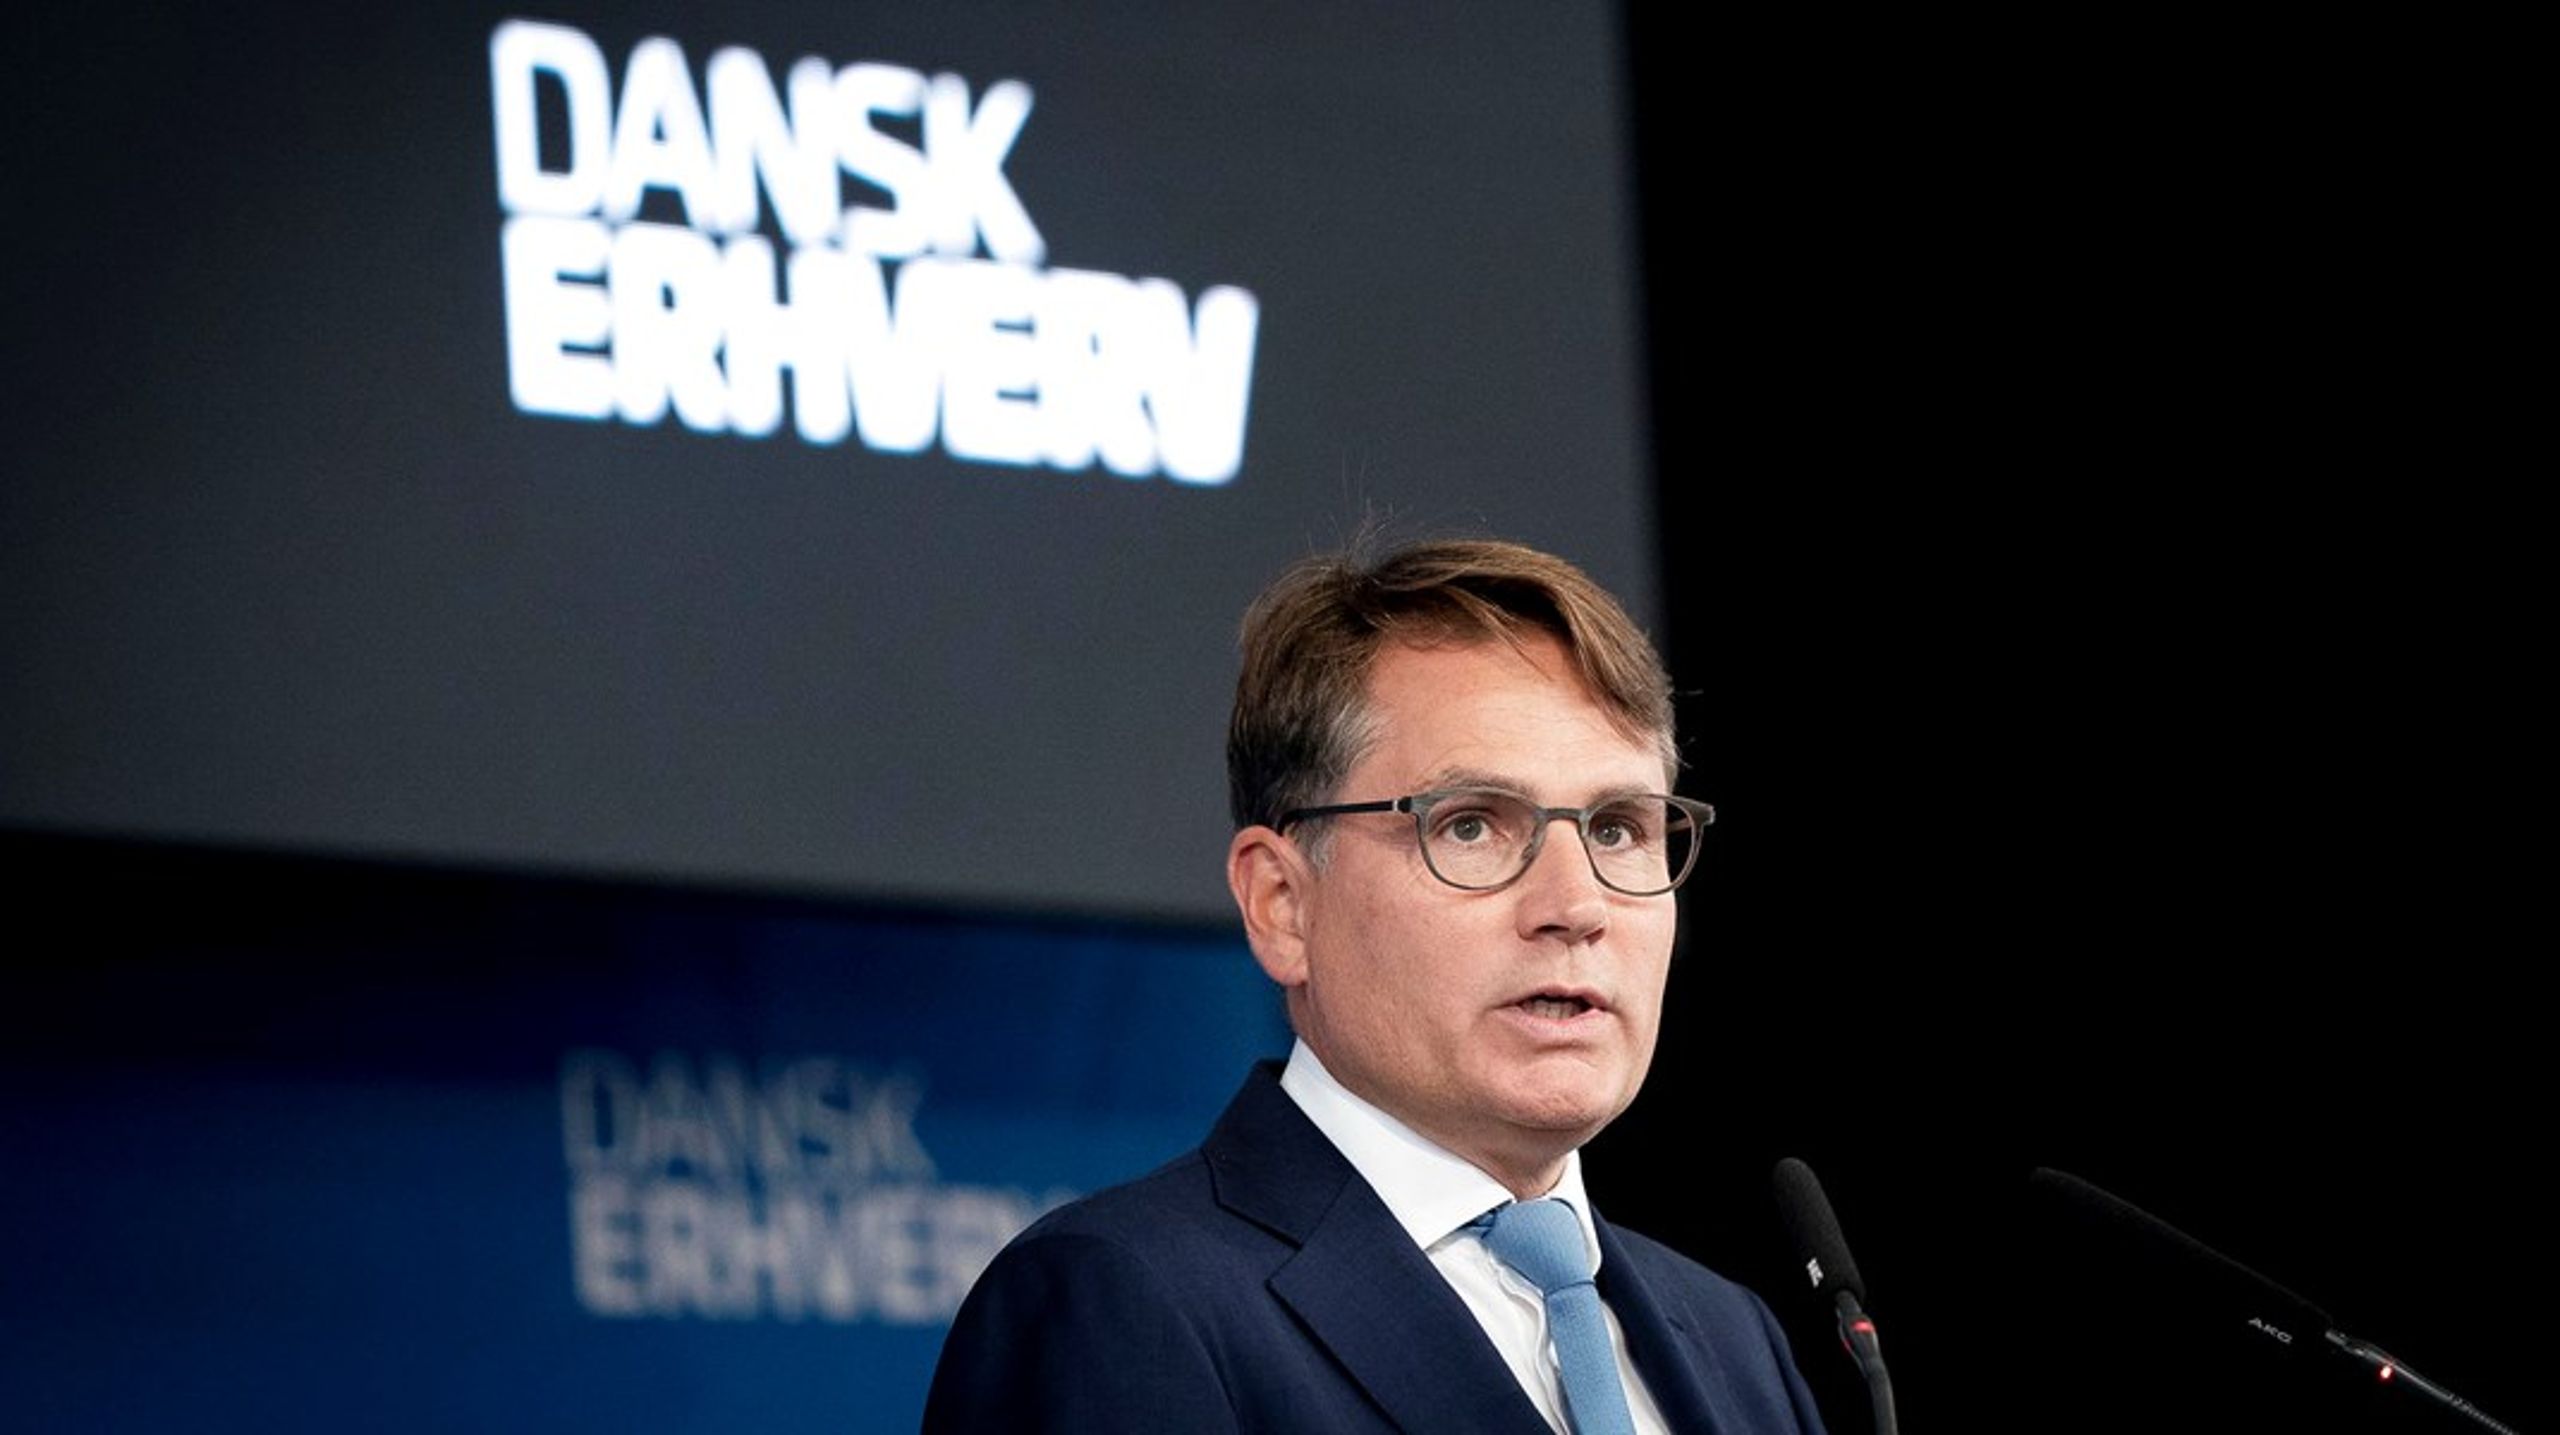 Dansk Erhverv, med direktør Brian Mikkelsen i spidsen, har nedsat et panel, der skal se på, hvordan dansk iværksætterkultur kan styrkes. Tirsdag kom panelet med 28 anbefalinger